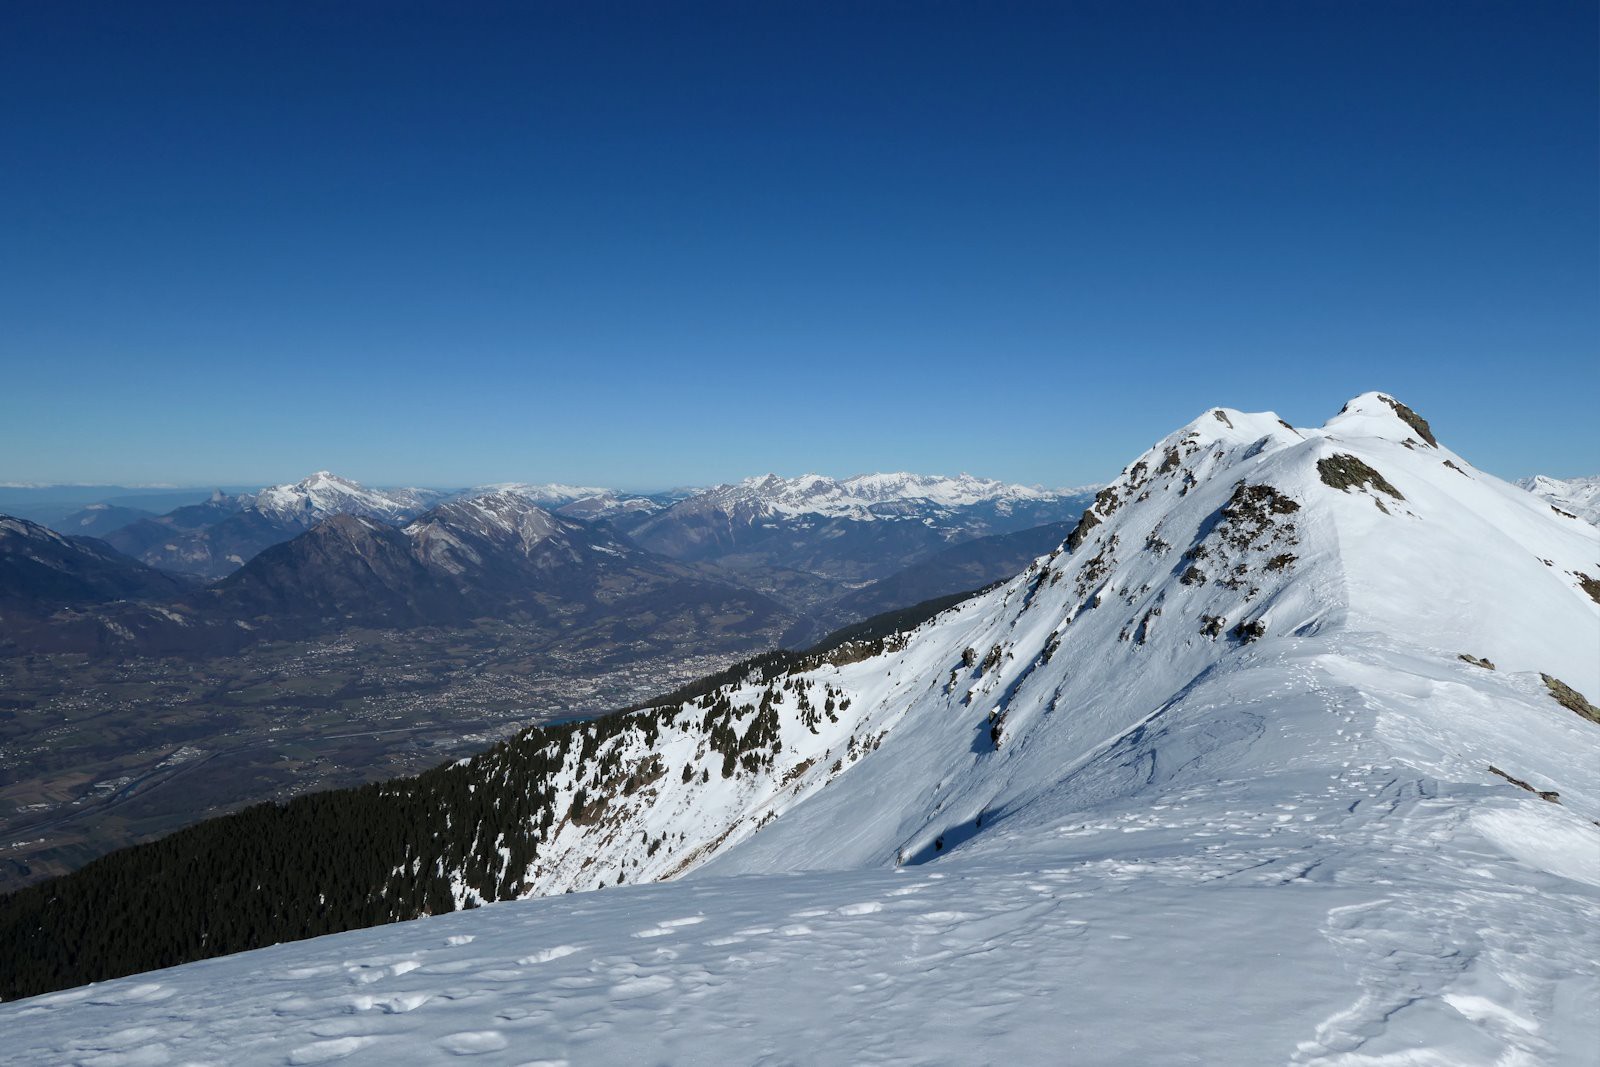 Des abords du col 2318 m, Albertville et la Combe de Savoie.